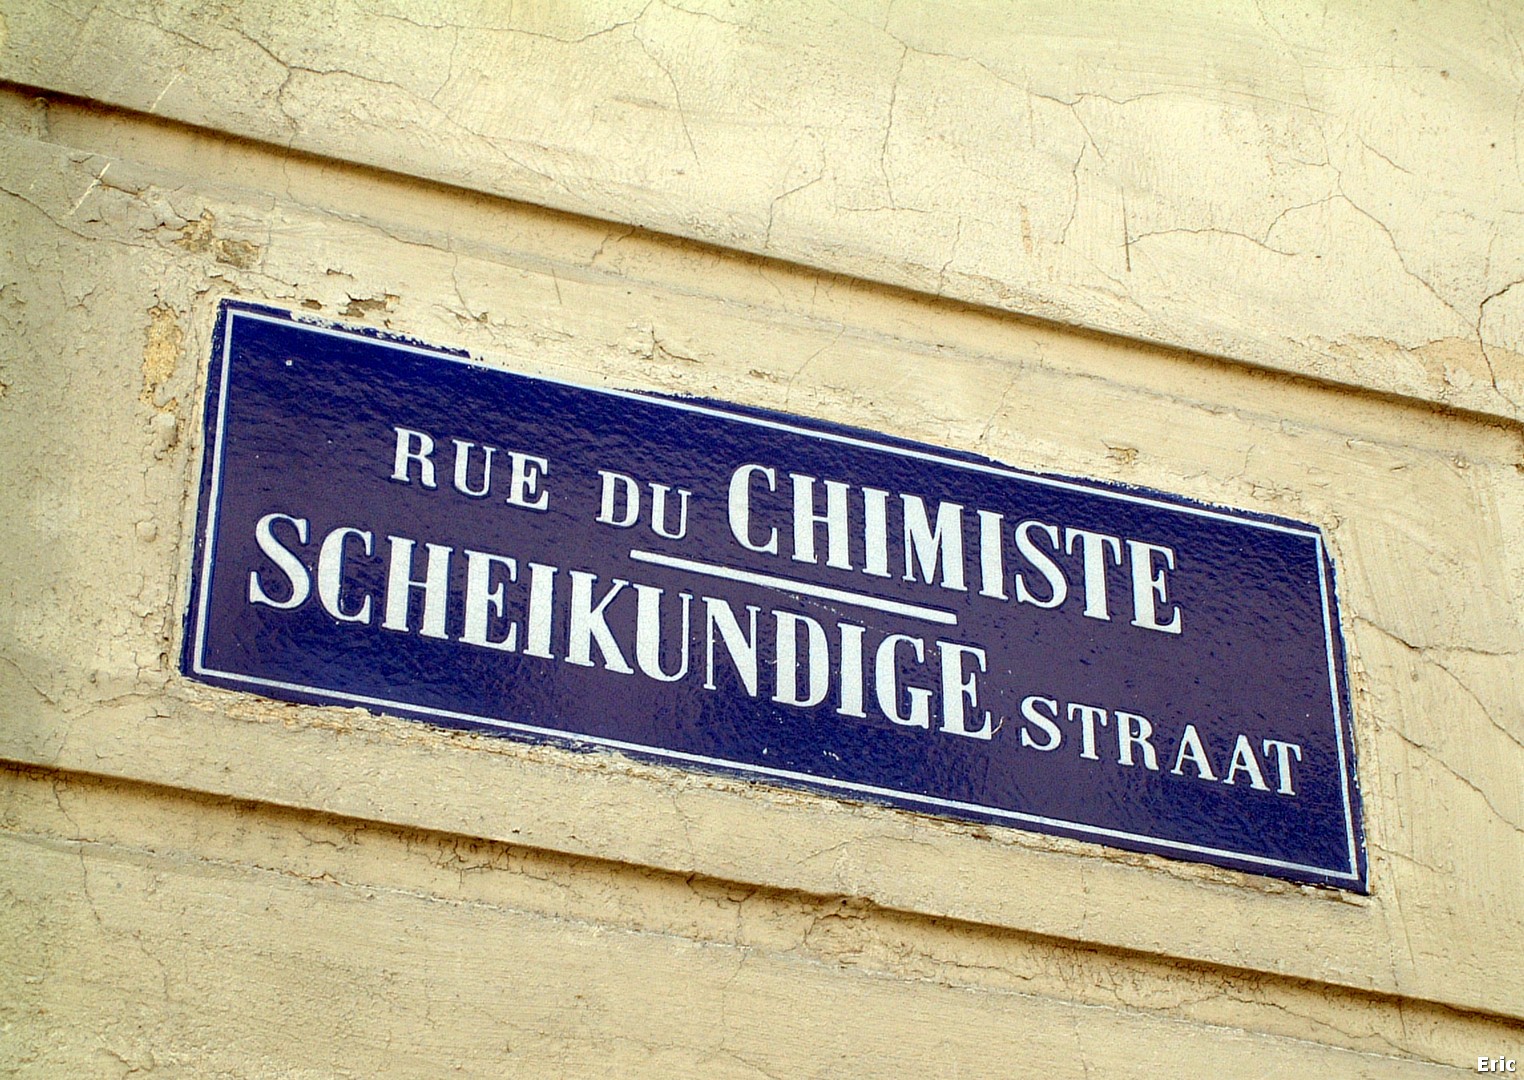 Rue du Chimiste